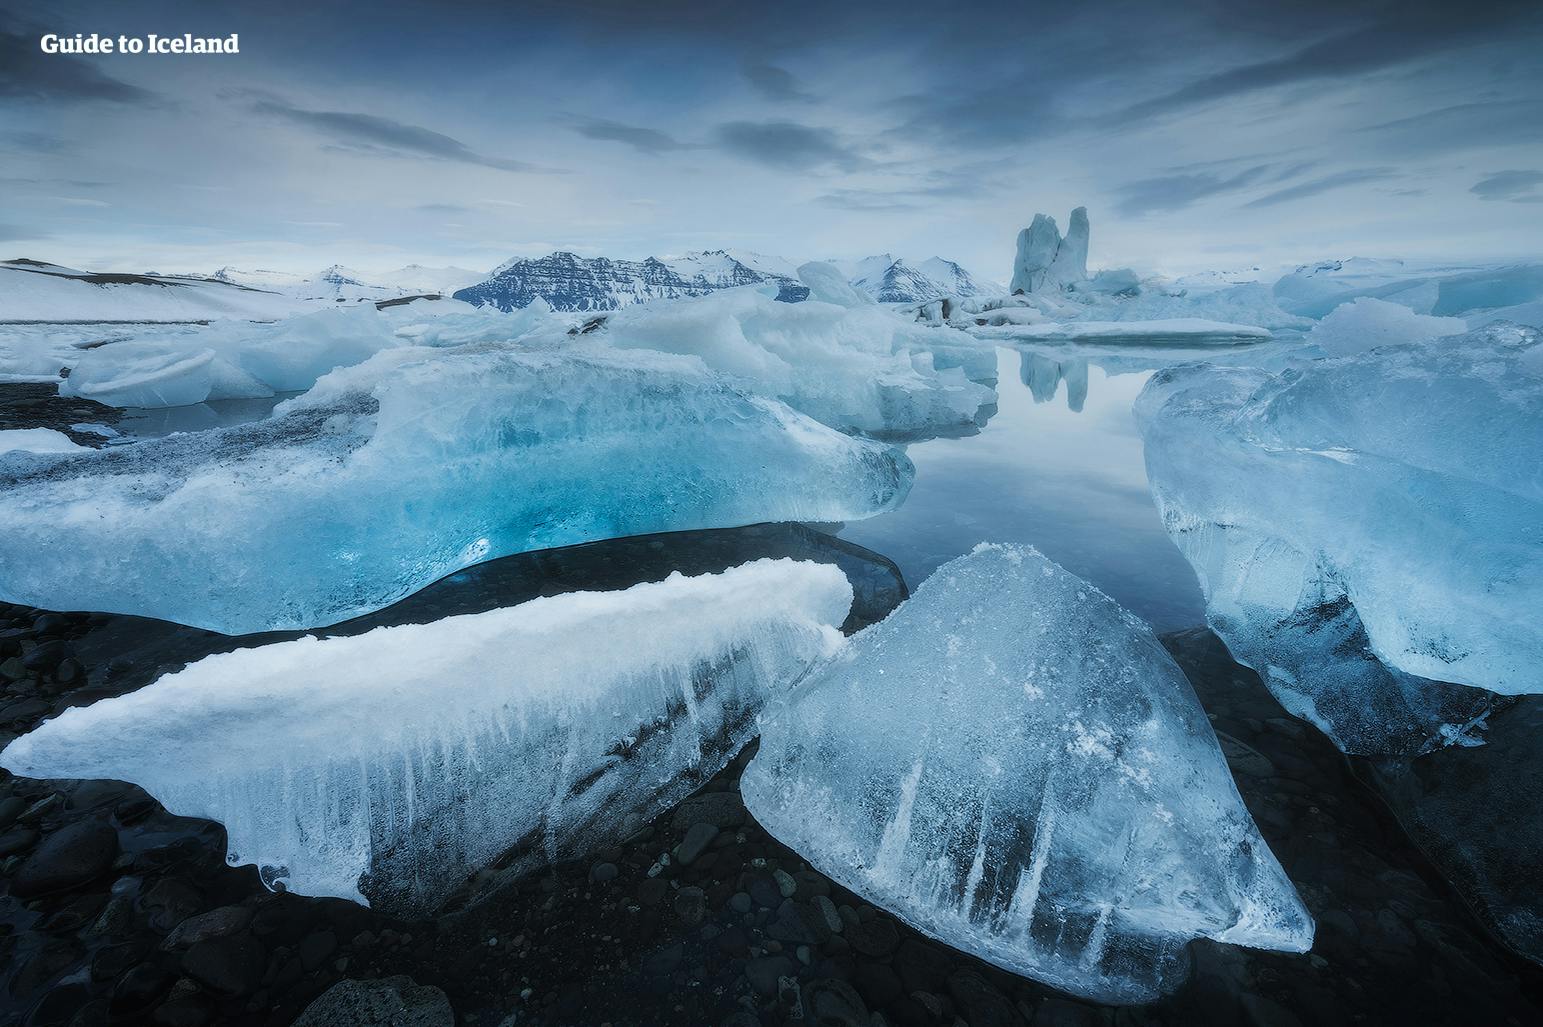 De Jokulsarlon-gletsjerlagune in IJsland